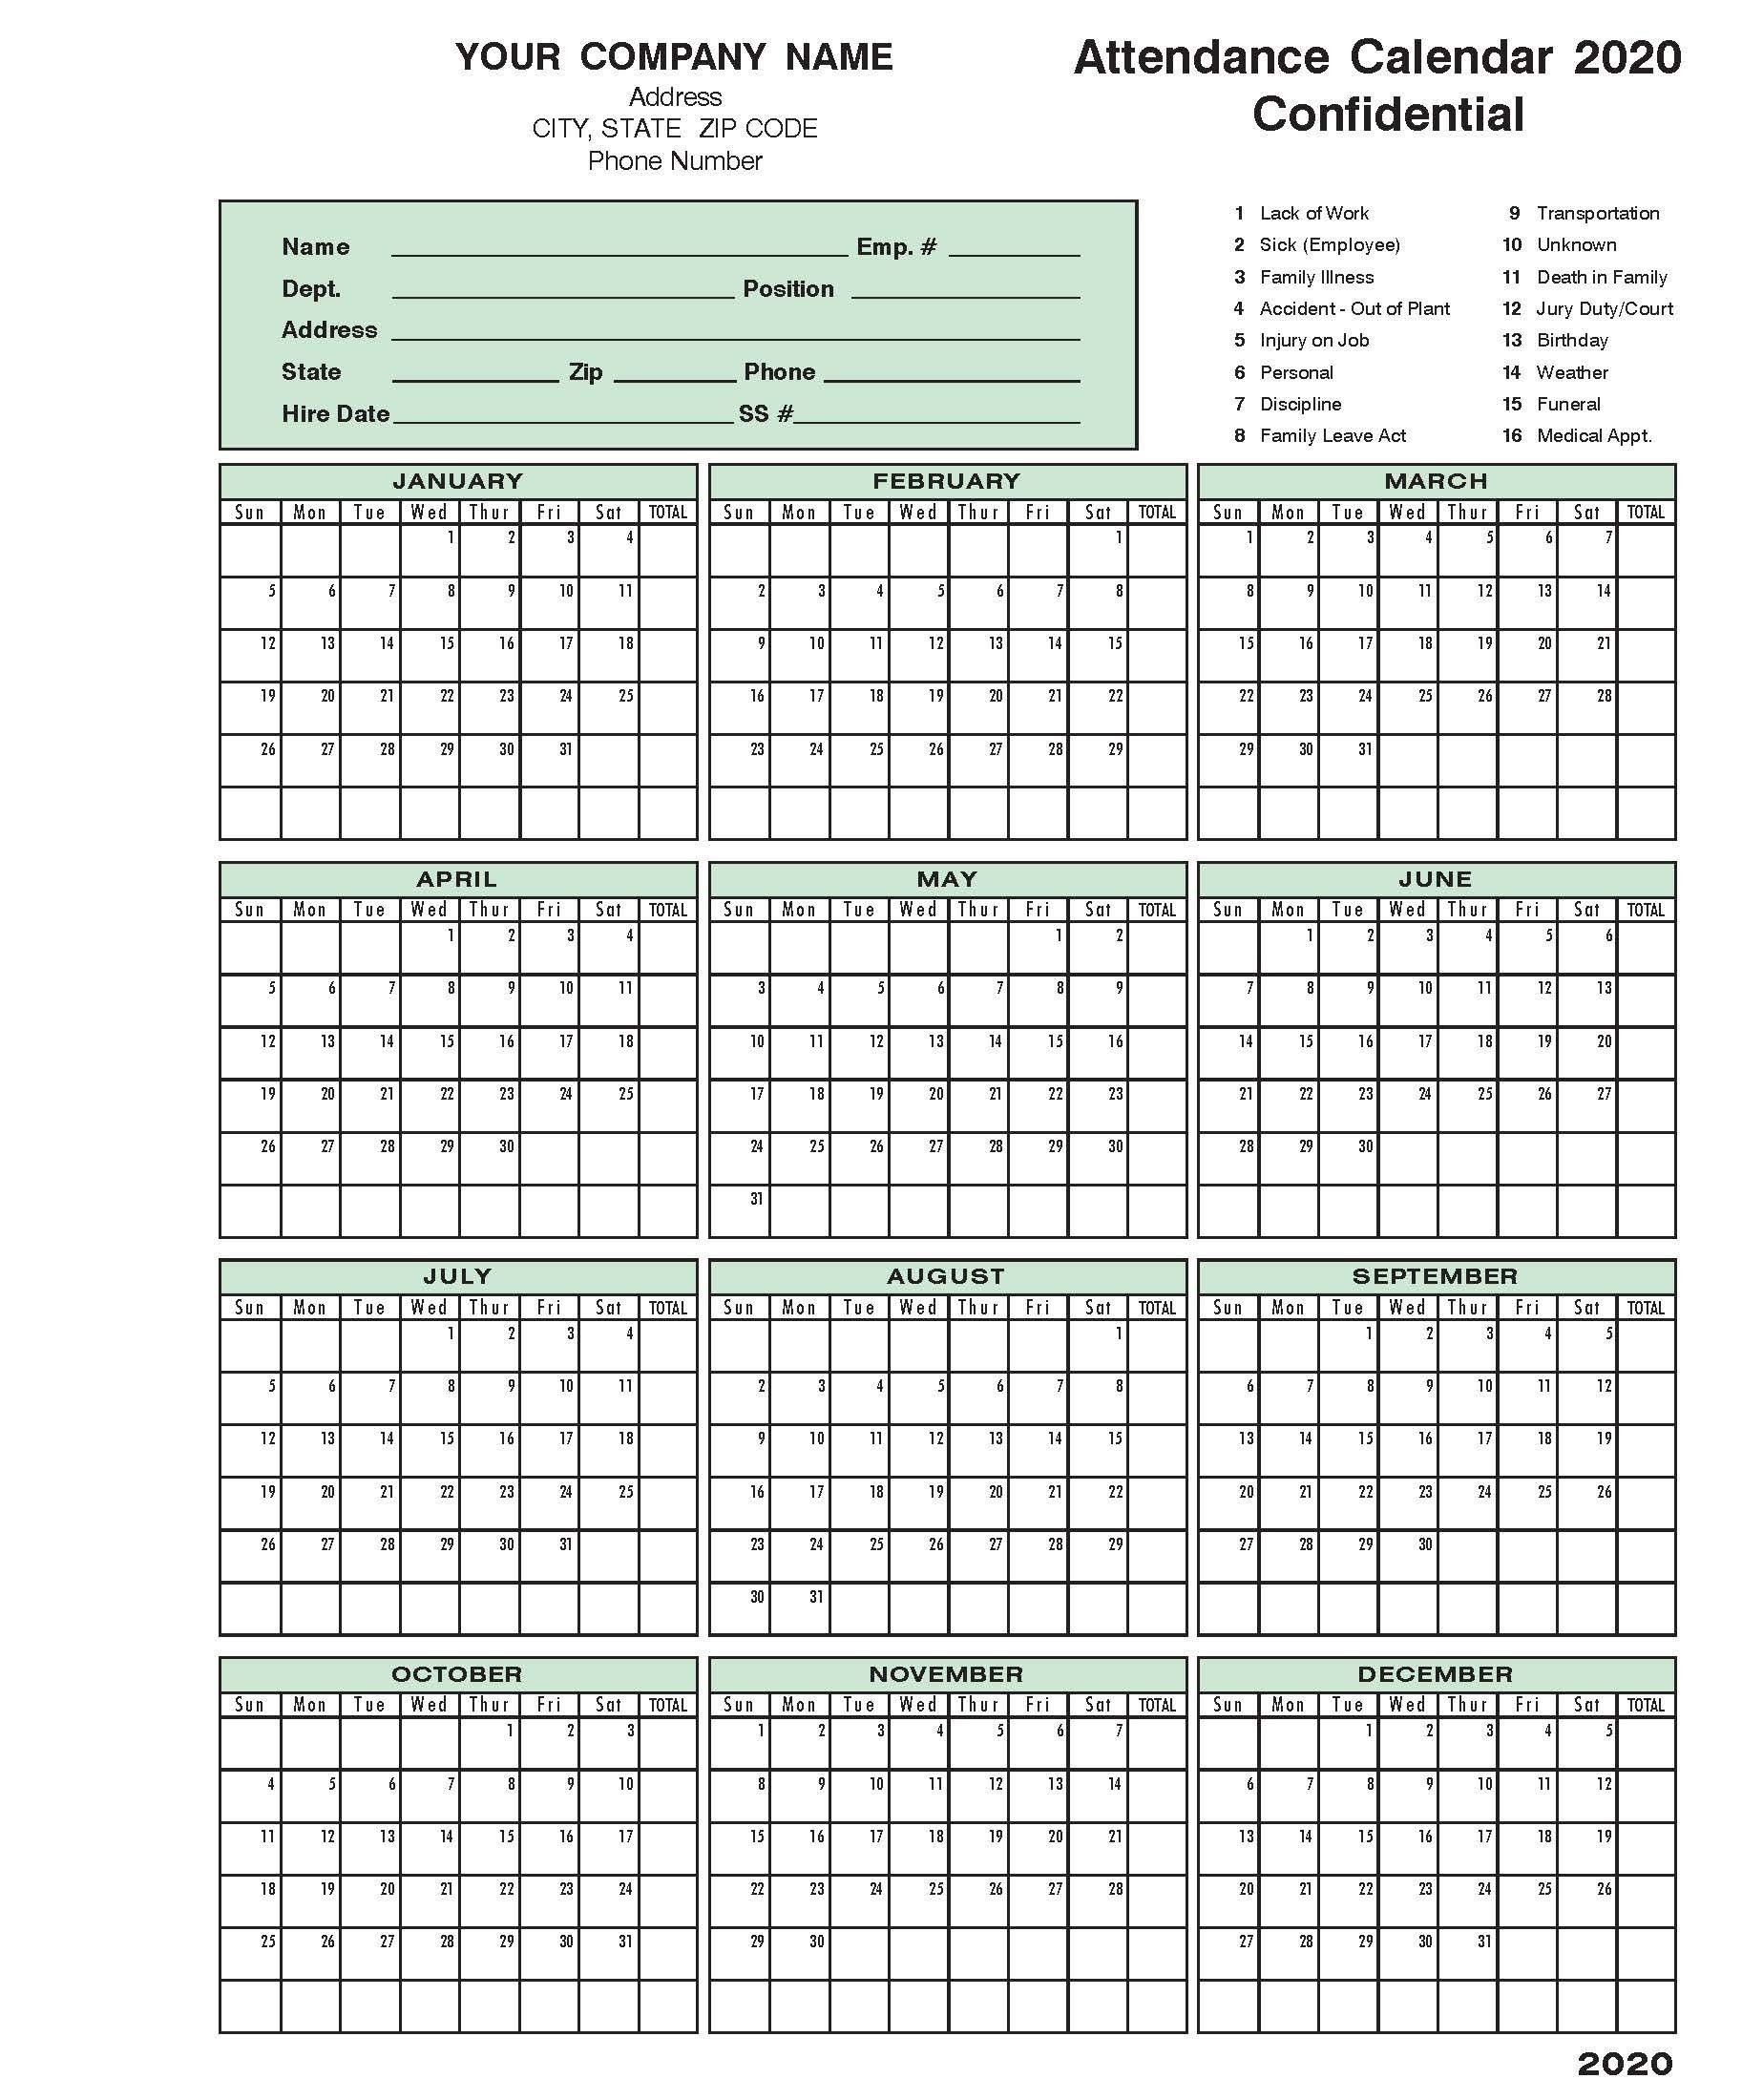 2020 Attendance Calendar In 2020 | Calendar Template  Printable Attendance Calendars 2021